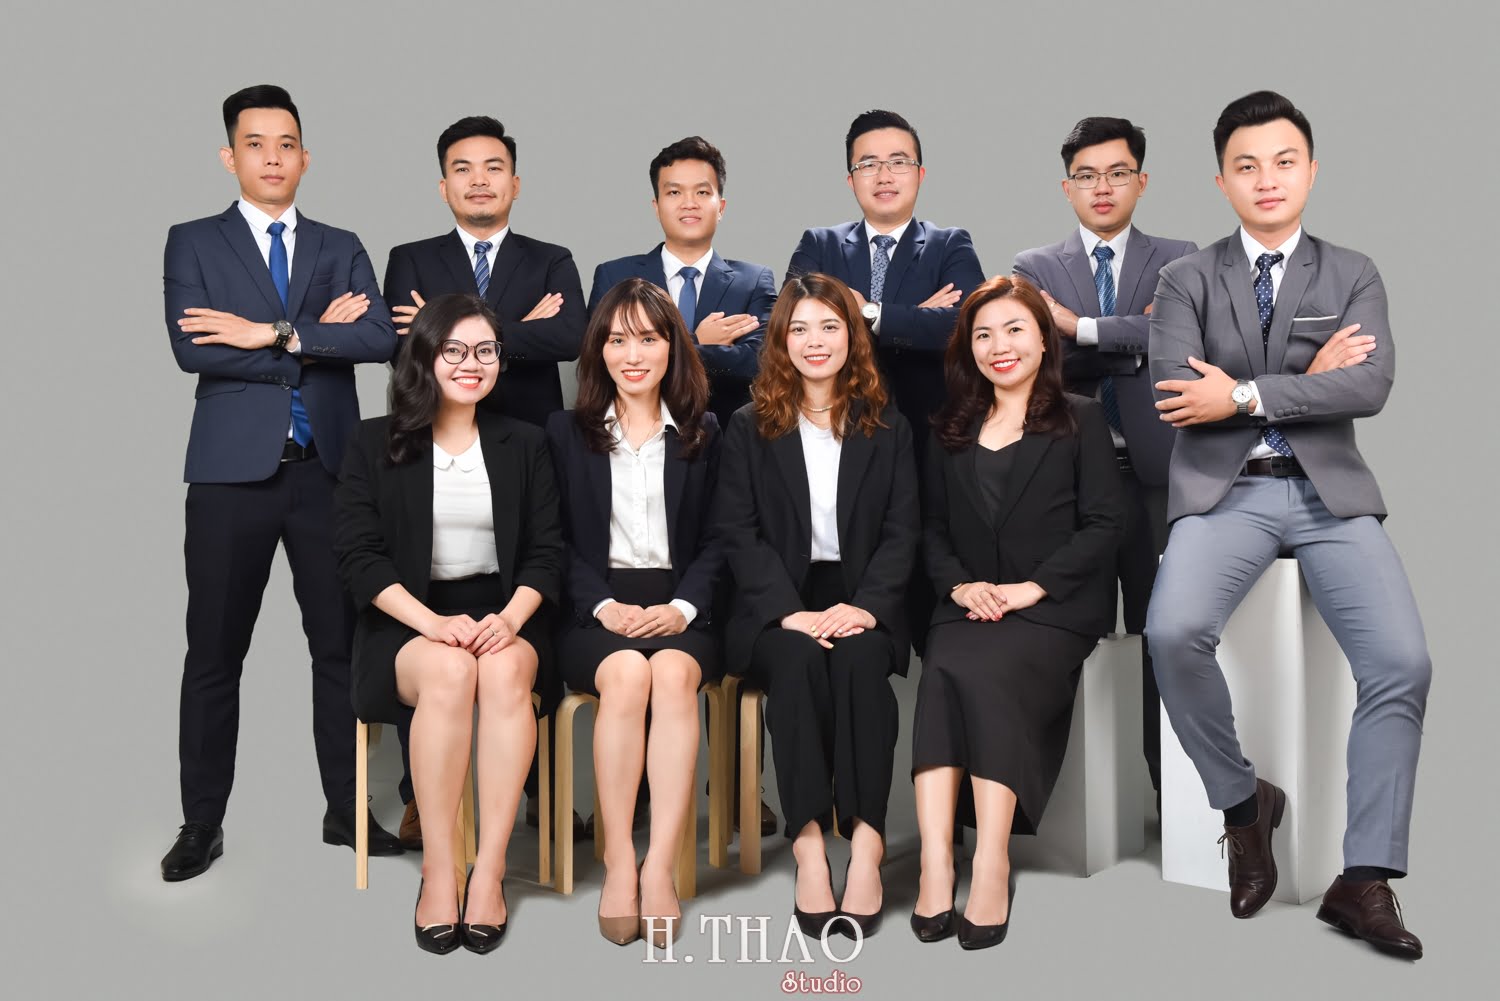 Anh profile cong ty 16 - Chụp ảnh profile cho đội nhóm sale ngân hàng - HThao Studio